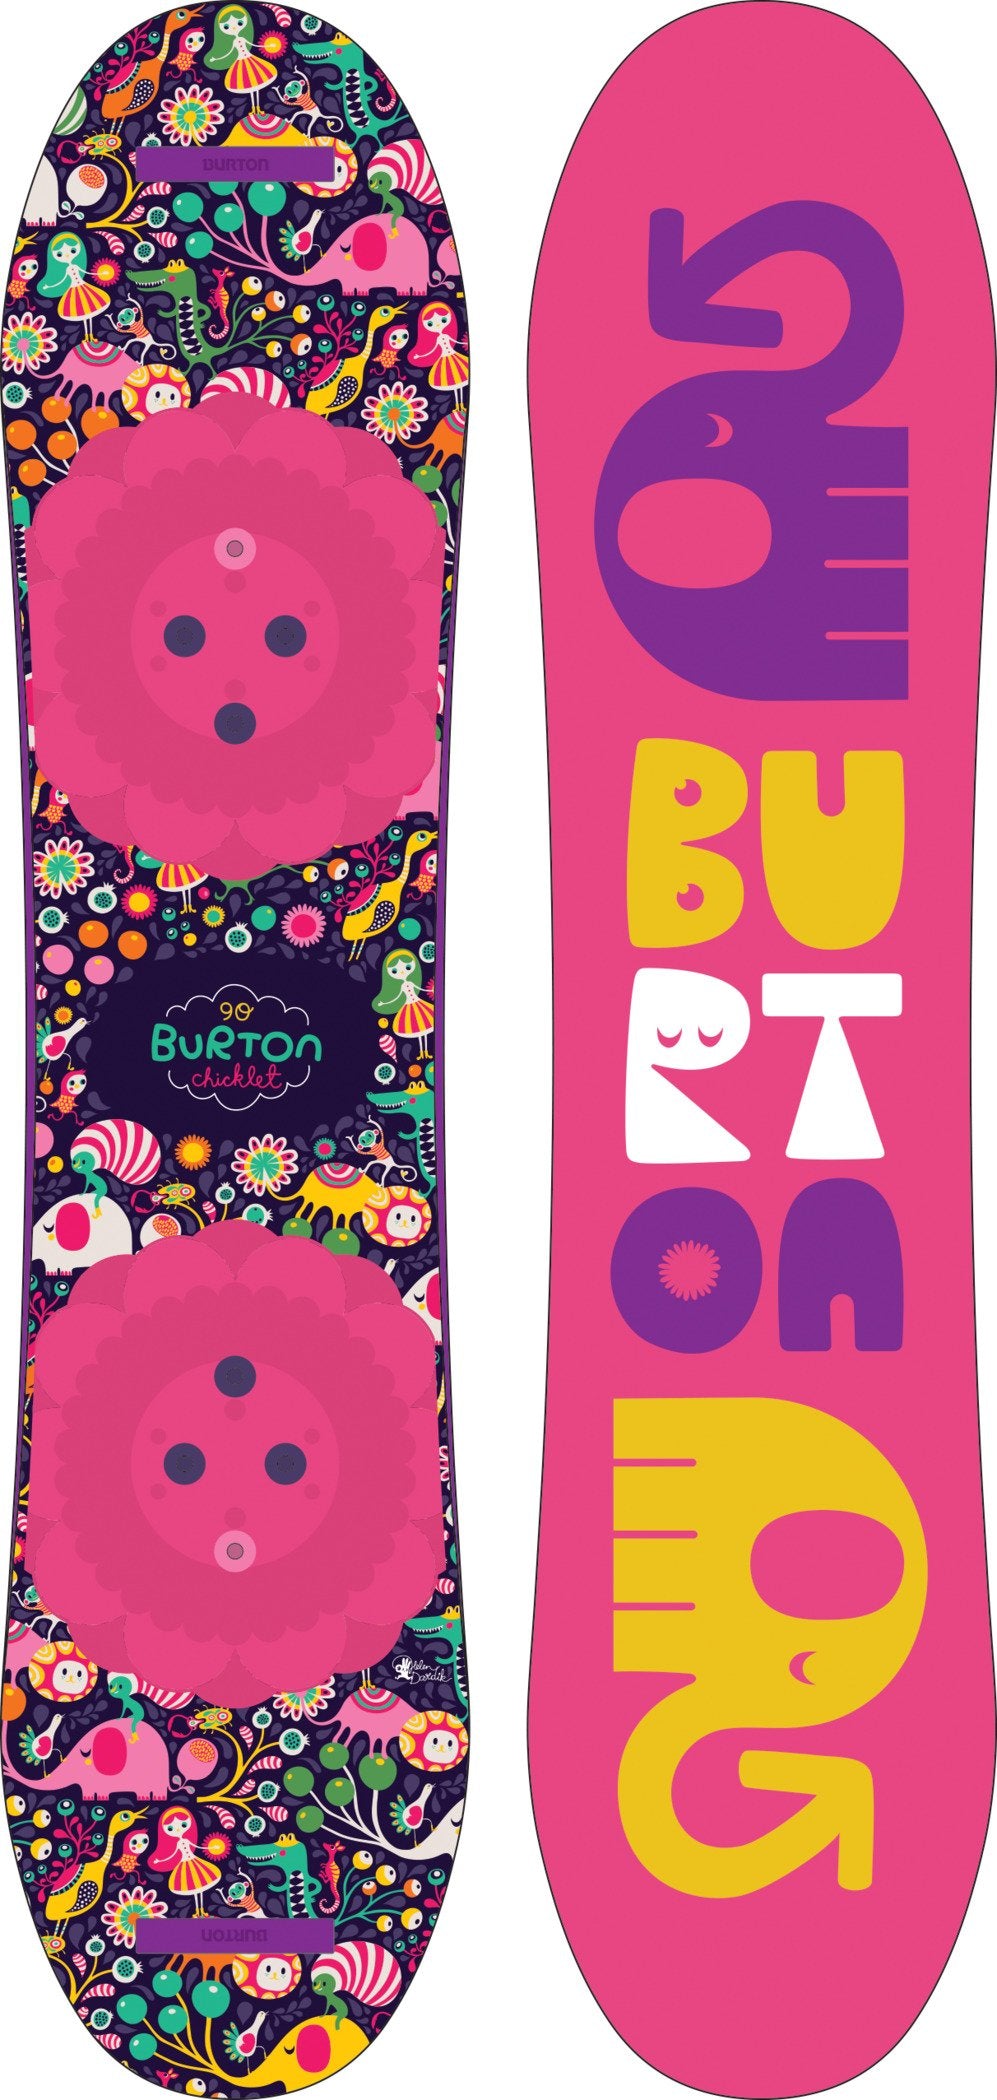 Burton Chicklet Snowboard 2019